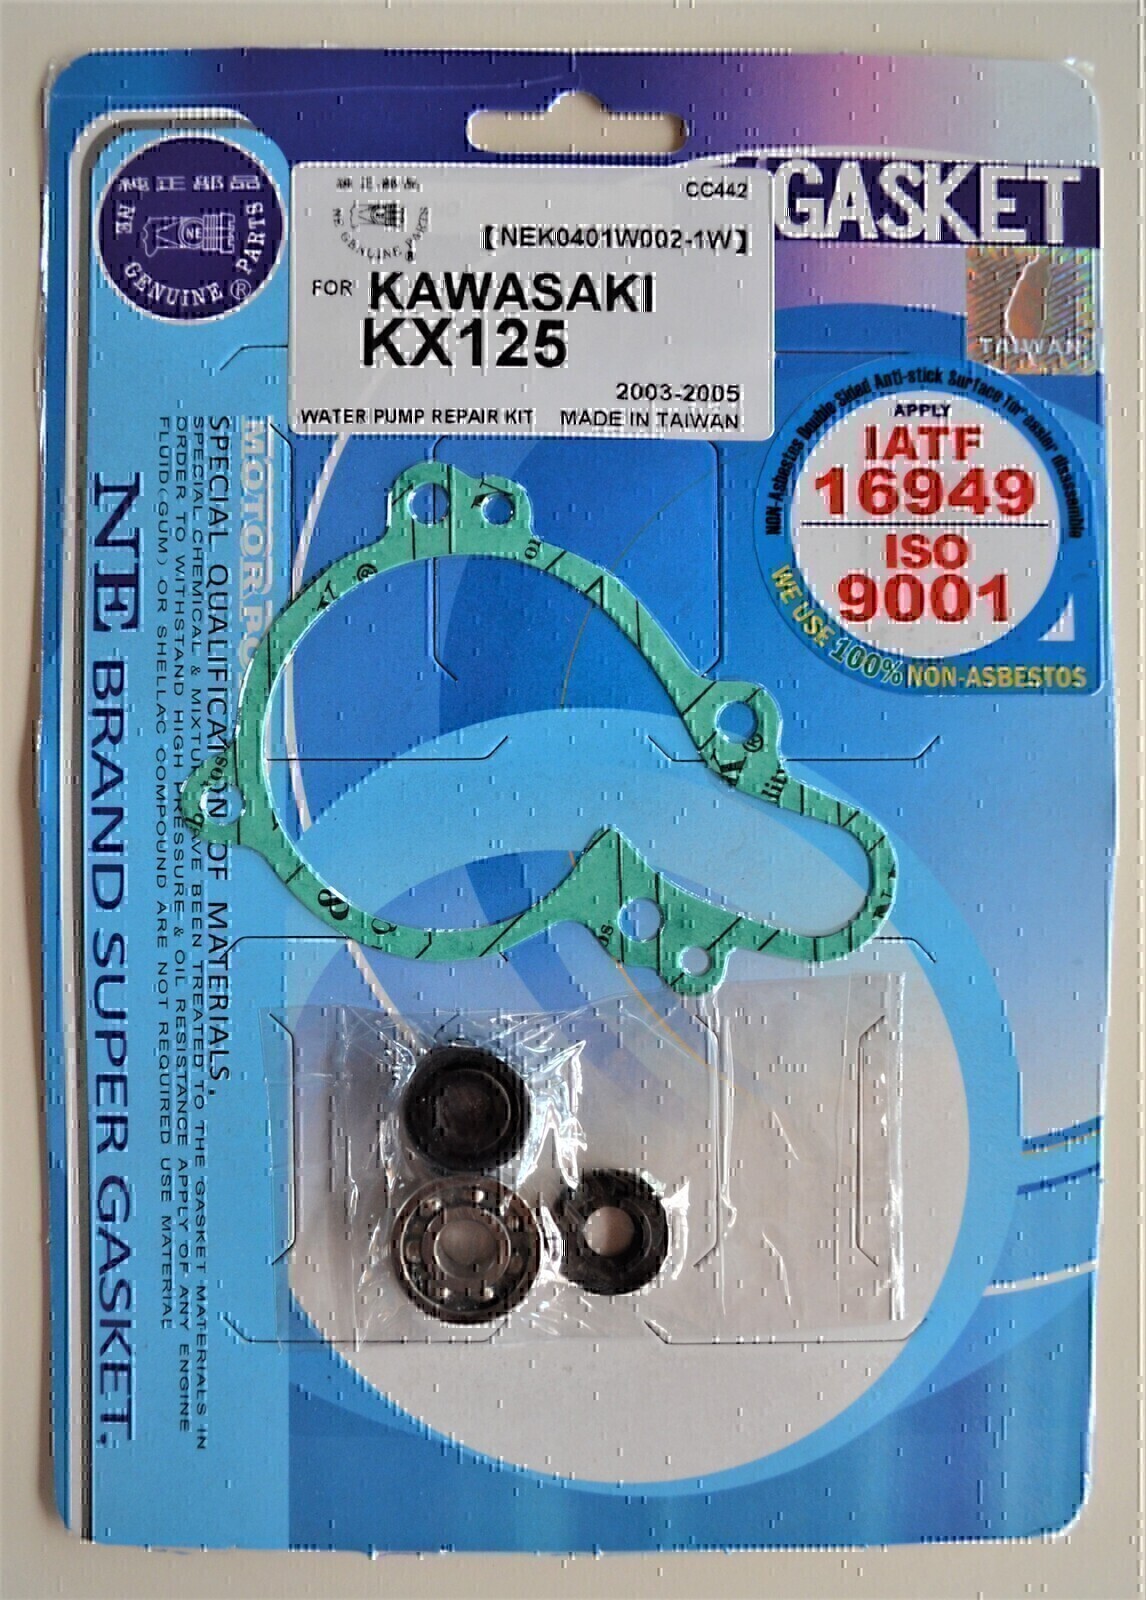 WATER PUMP REPAIR KIT FOR KAWASAKI KX125 KX 125 2003 2004 2005